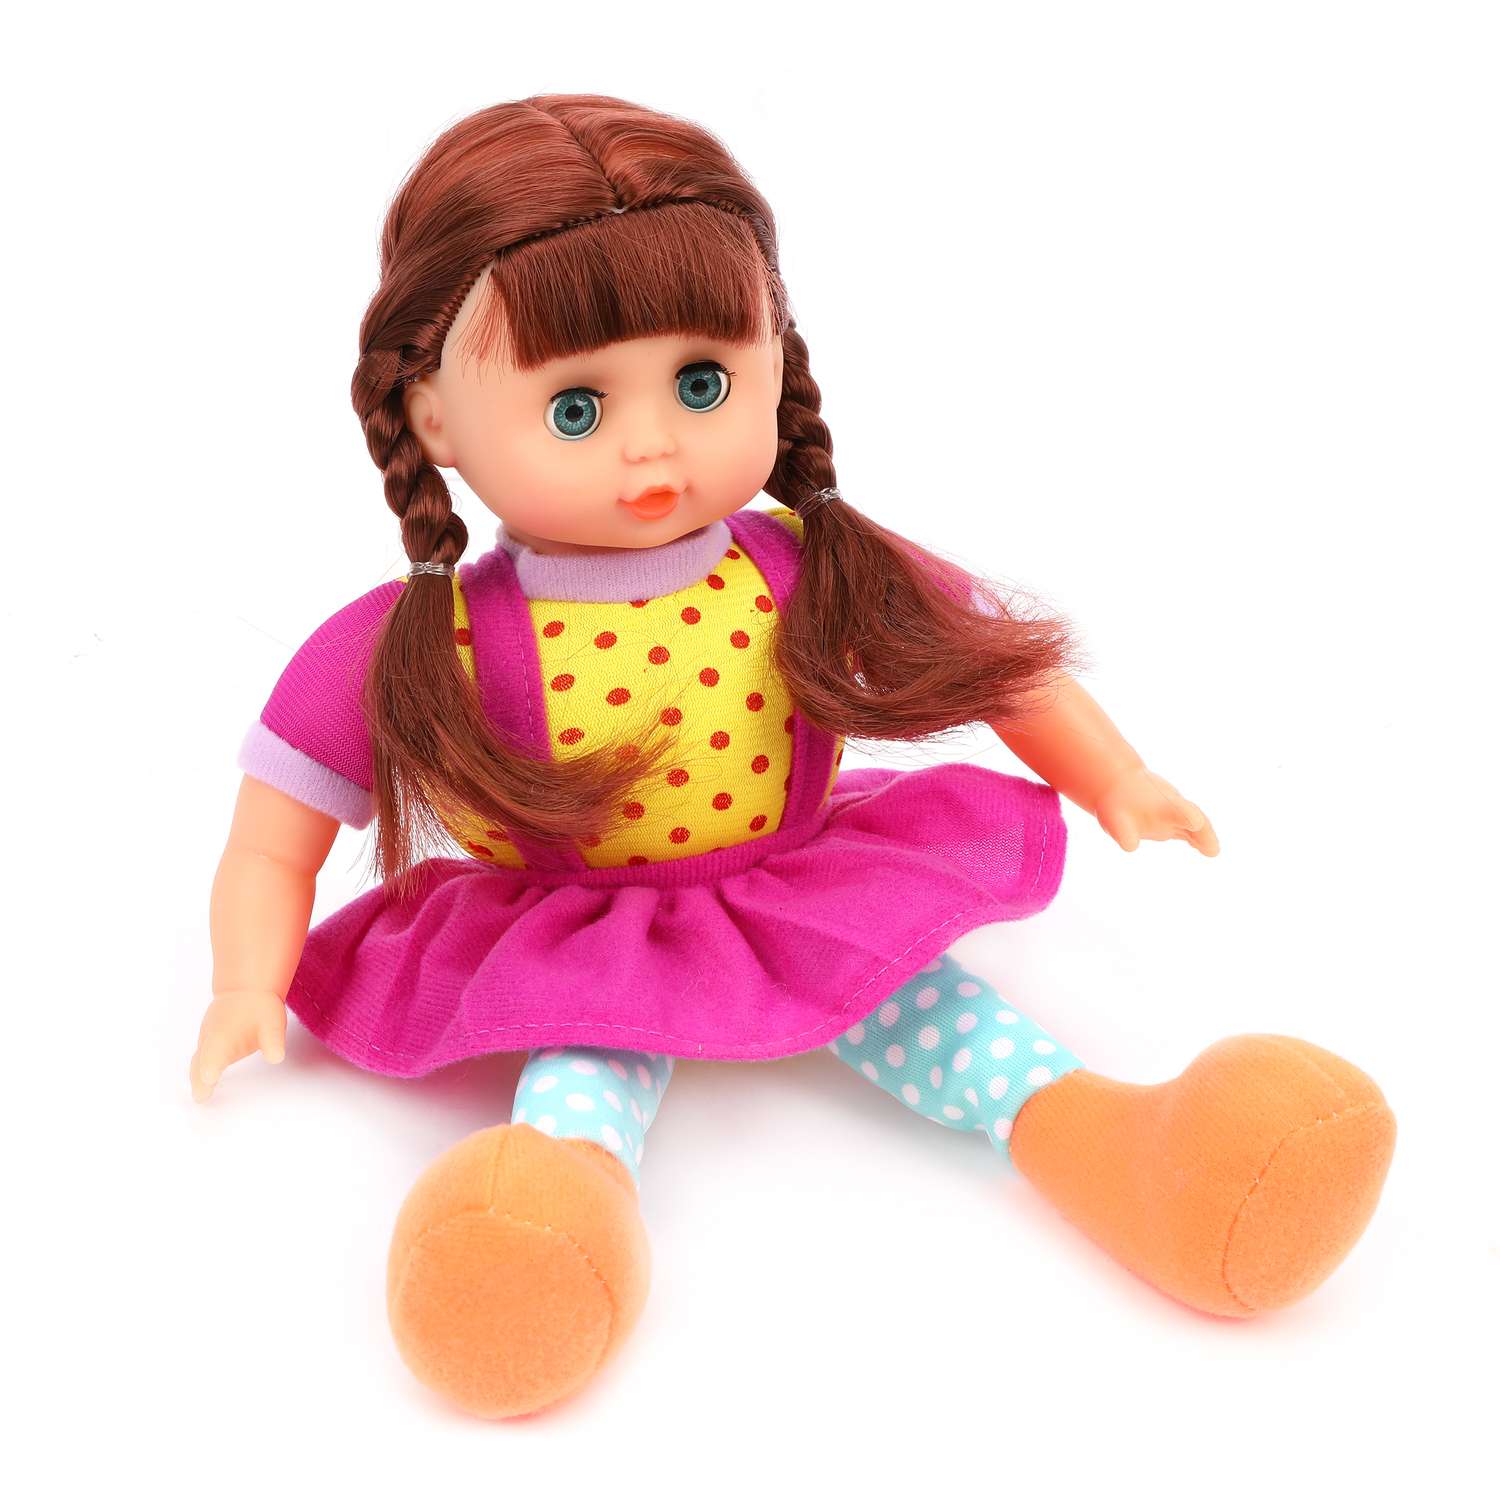 Кукла для девочки Наша Игрушка мягконабивная 30 см фиолетовое платье 612066 - фото 1